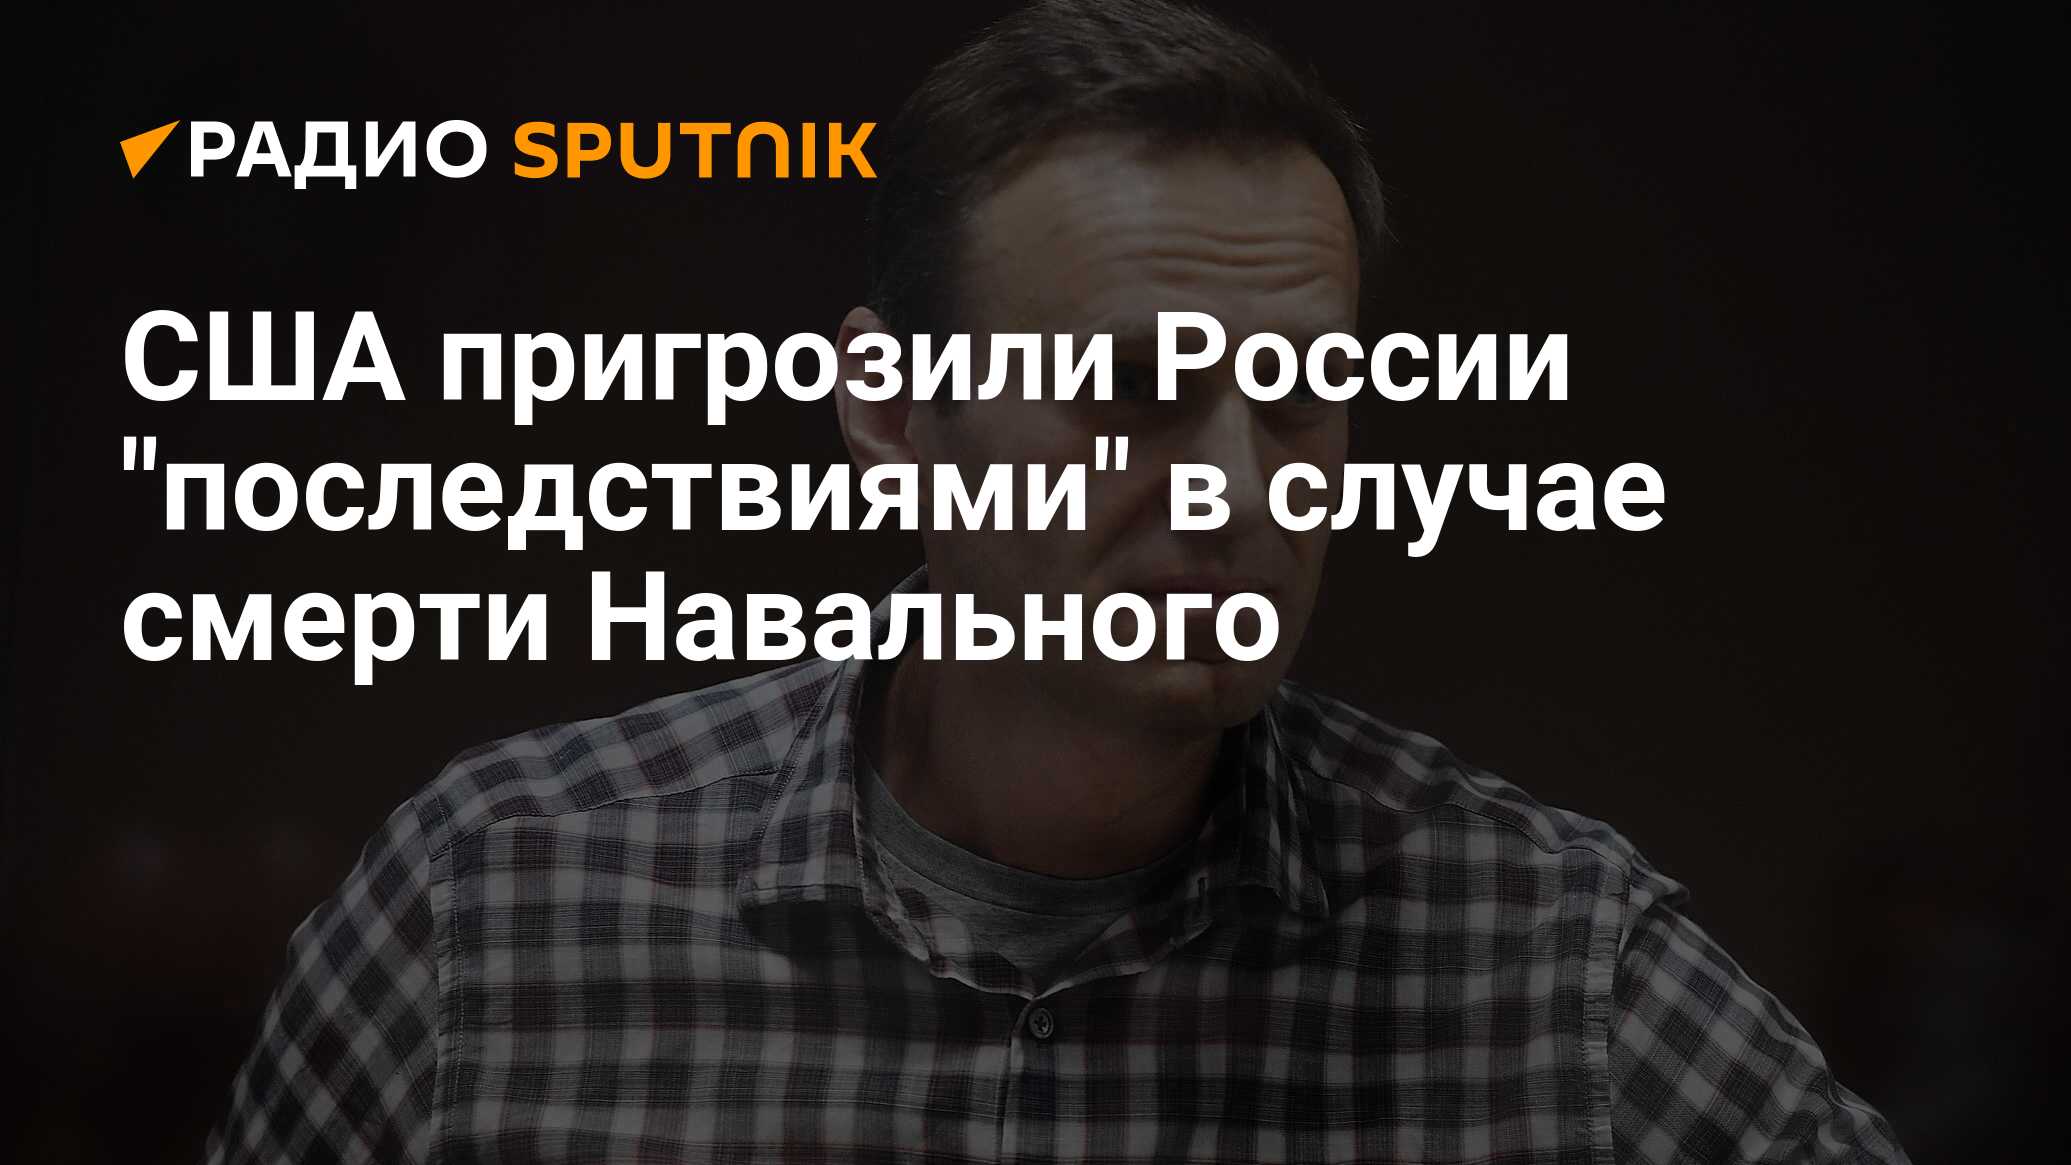 Официальная версия от чего умер навальный. Дата смерти Навального. Смерть Навального для России. Версия с Навальным смерти.